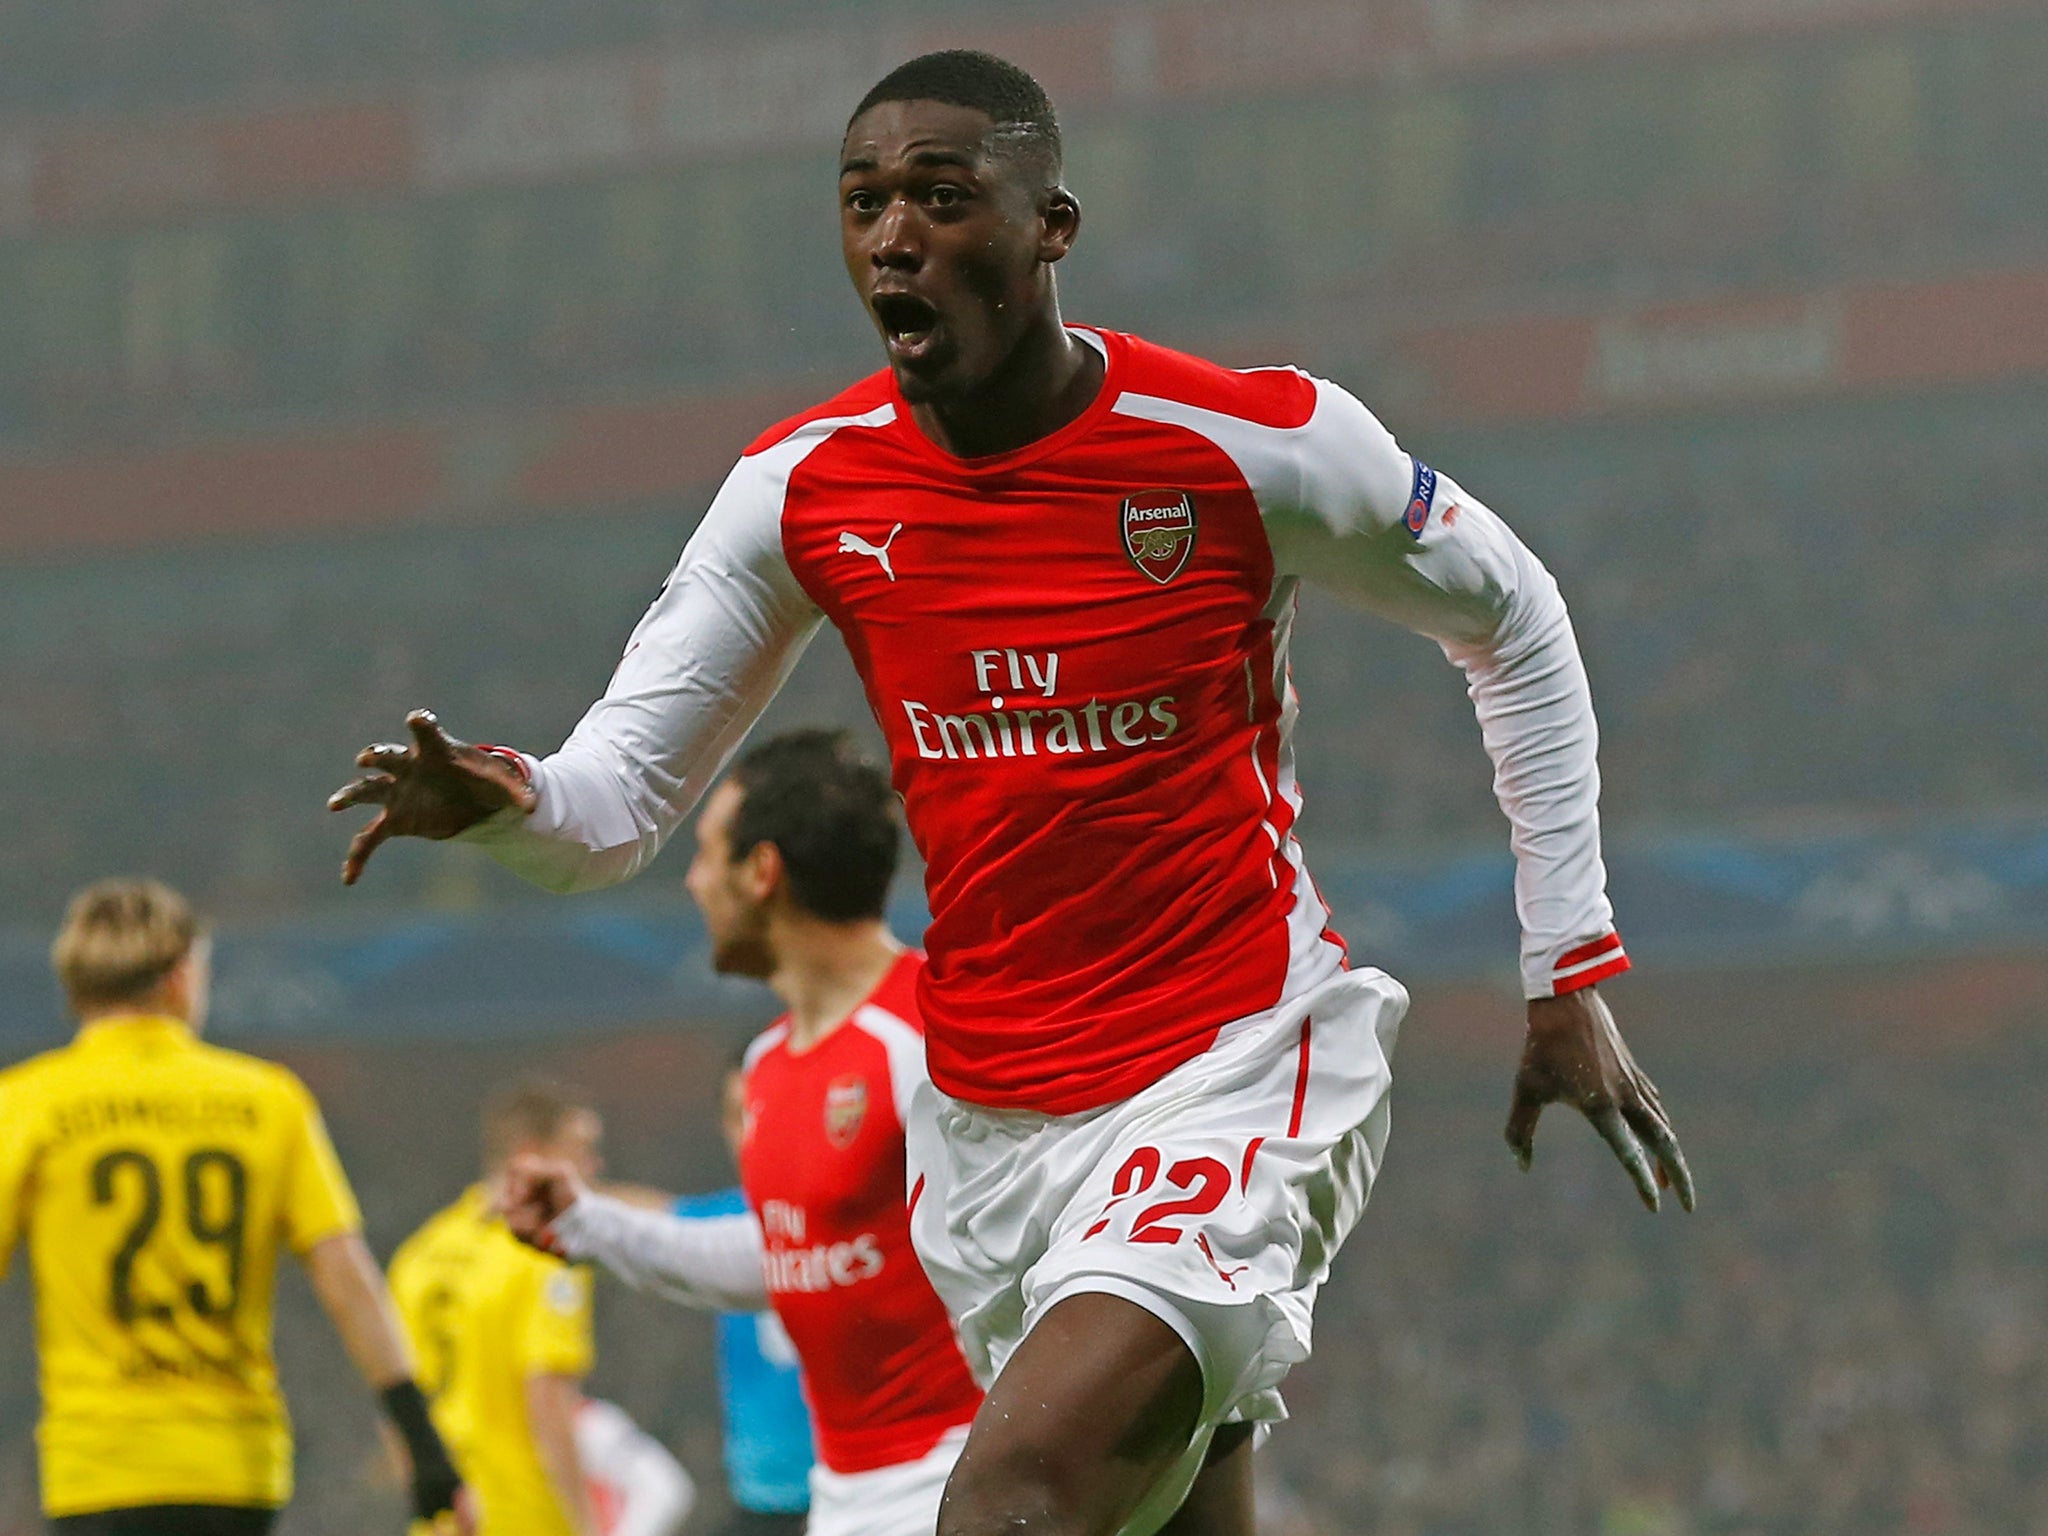 Yaya Sanogo celebrates his sole Arsenal goal - against Borussia Dortmund back in November